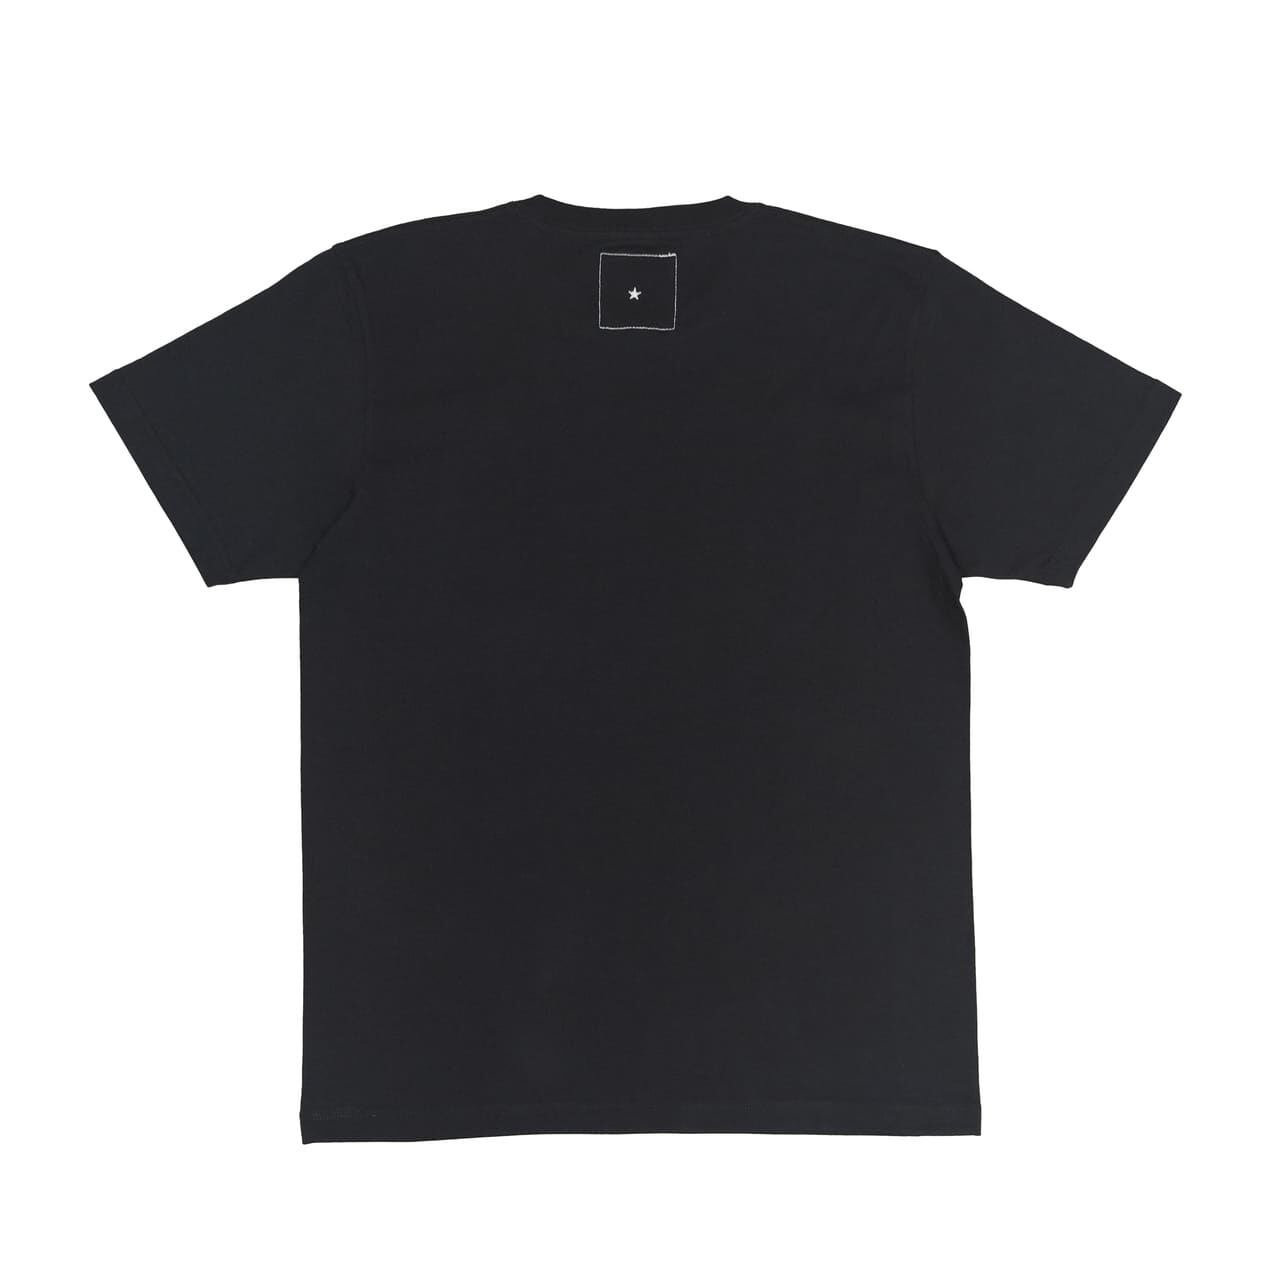 ThreeA Tシャツ Mサイズ 3A イラスト デザイン スリーエー 黒